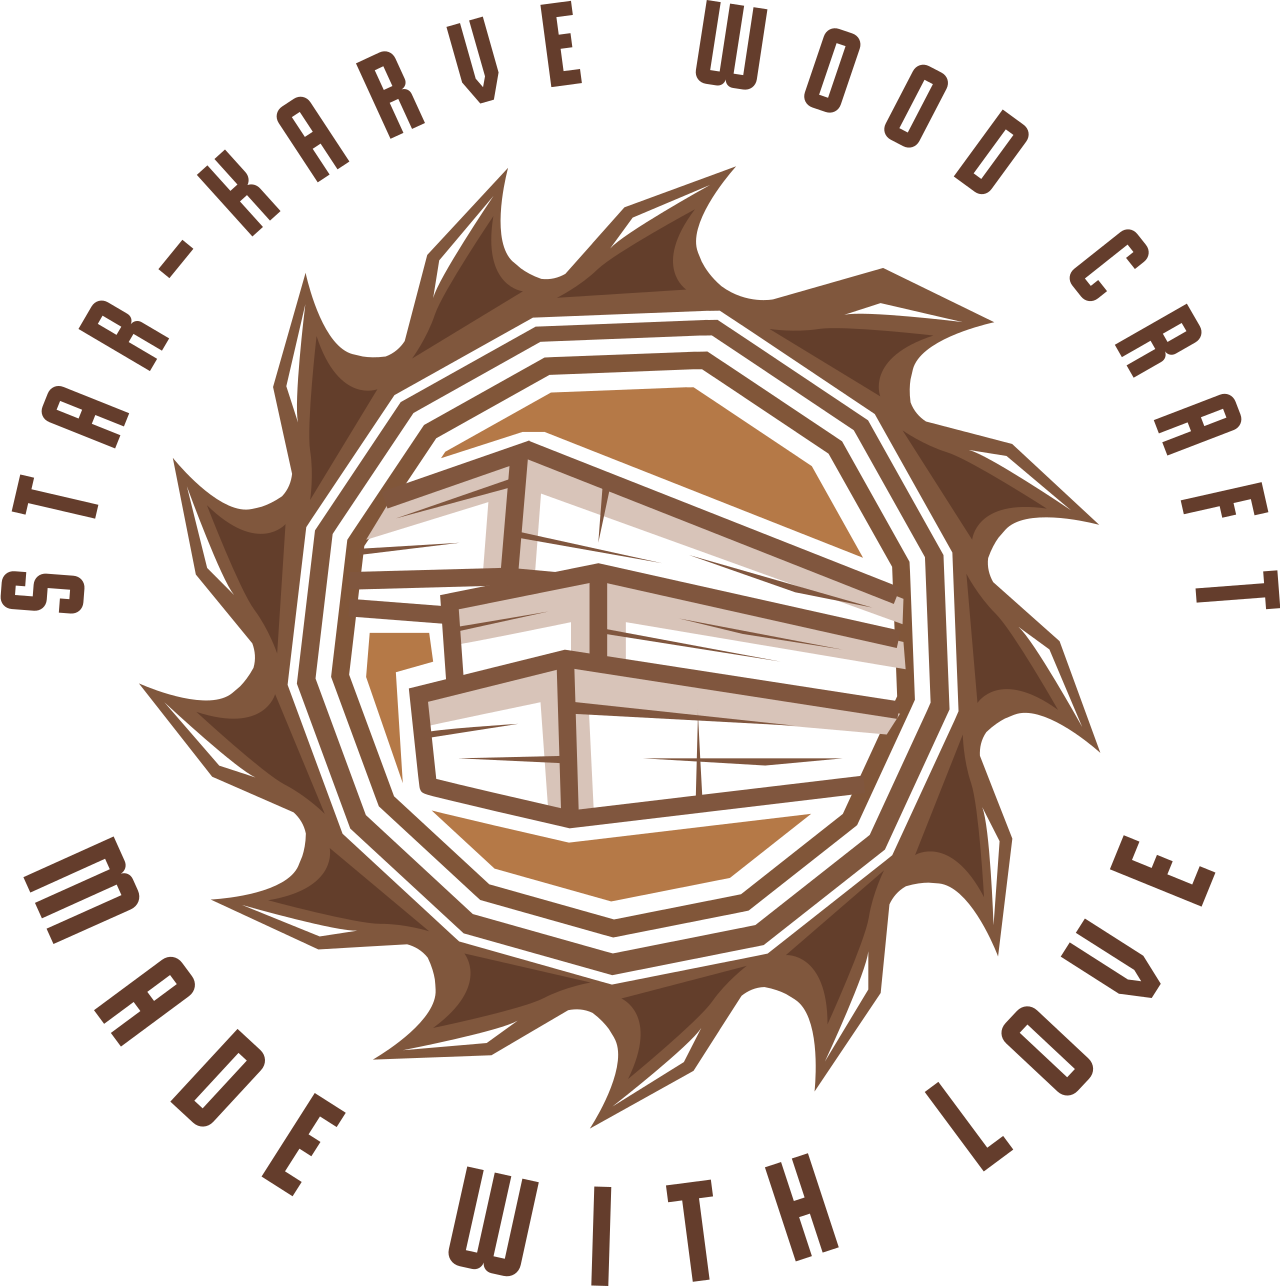 Star-karve wood craft's logo